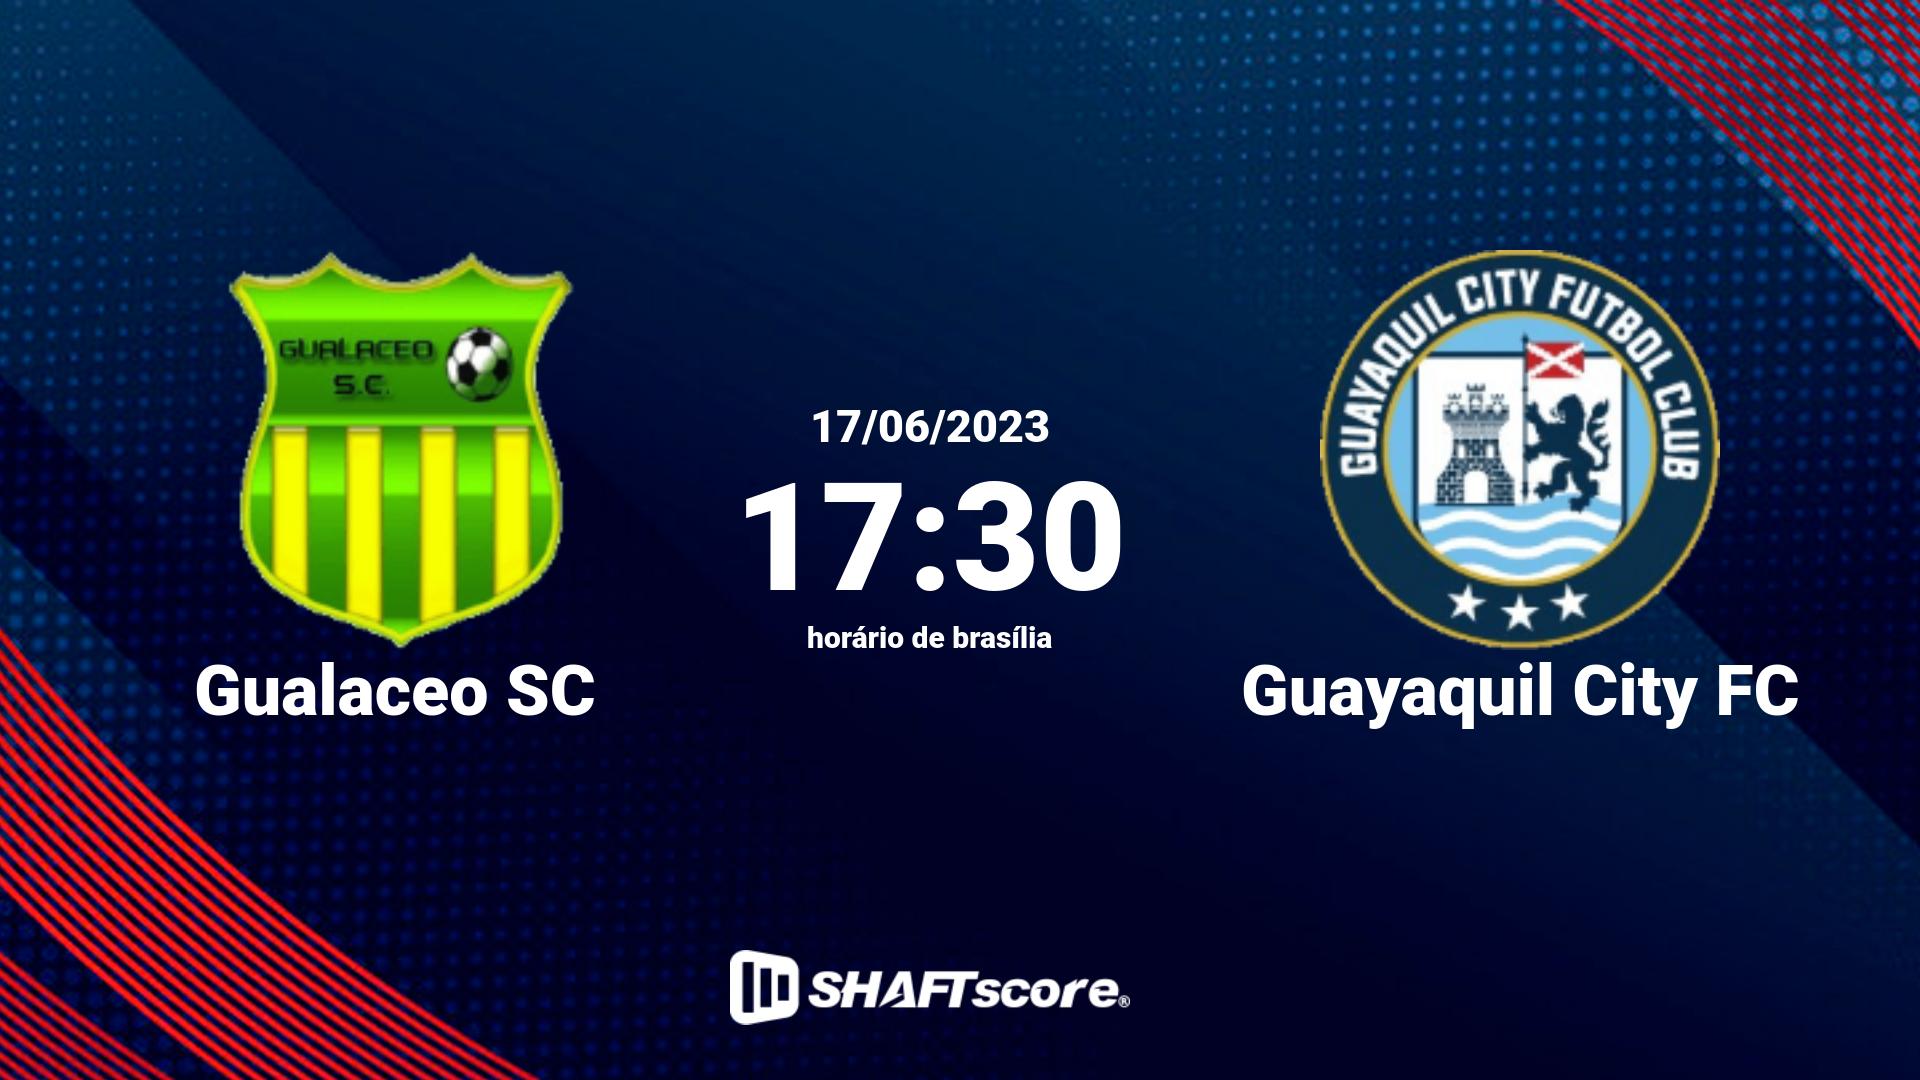 Estatísticas do jogo Gualaceo SC vs Guayaquil City FC 17.06 17:30